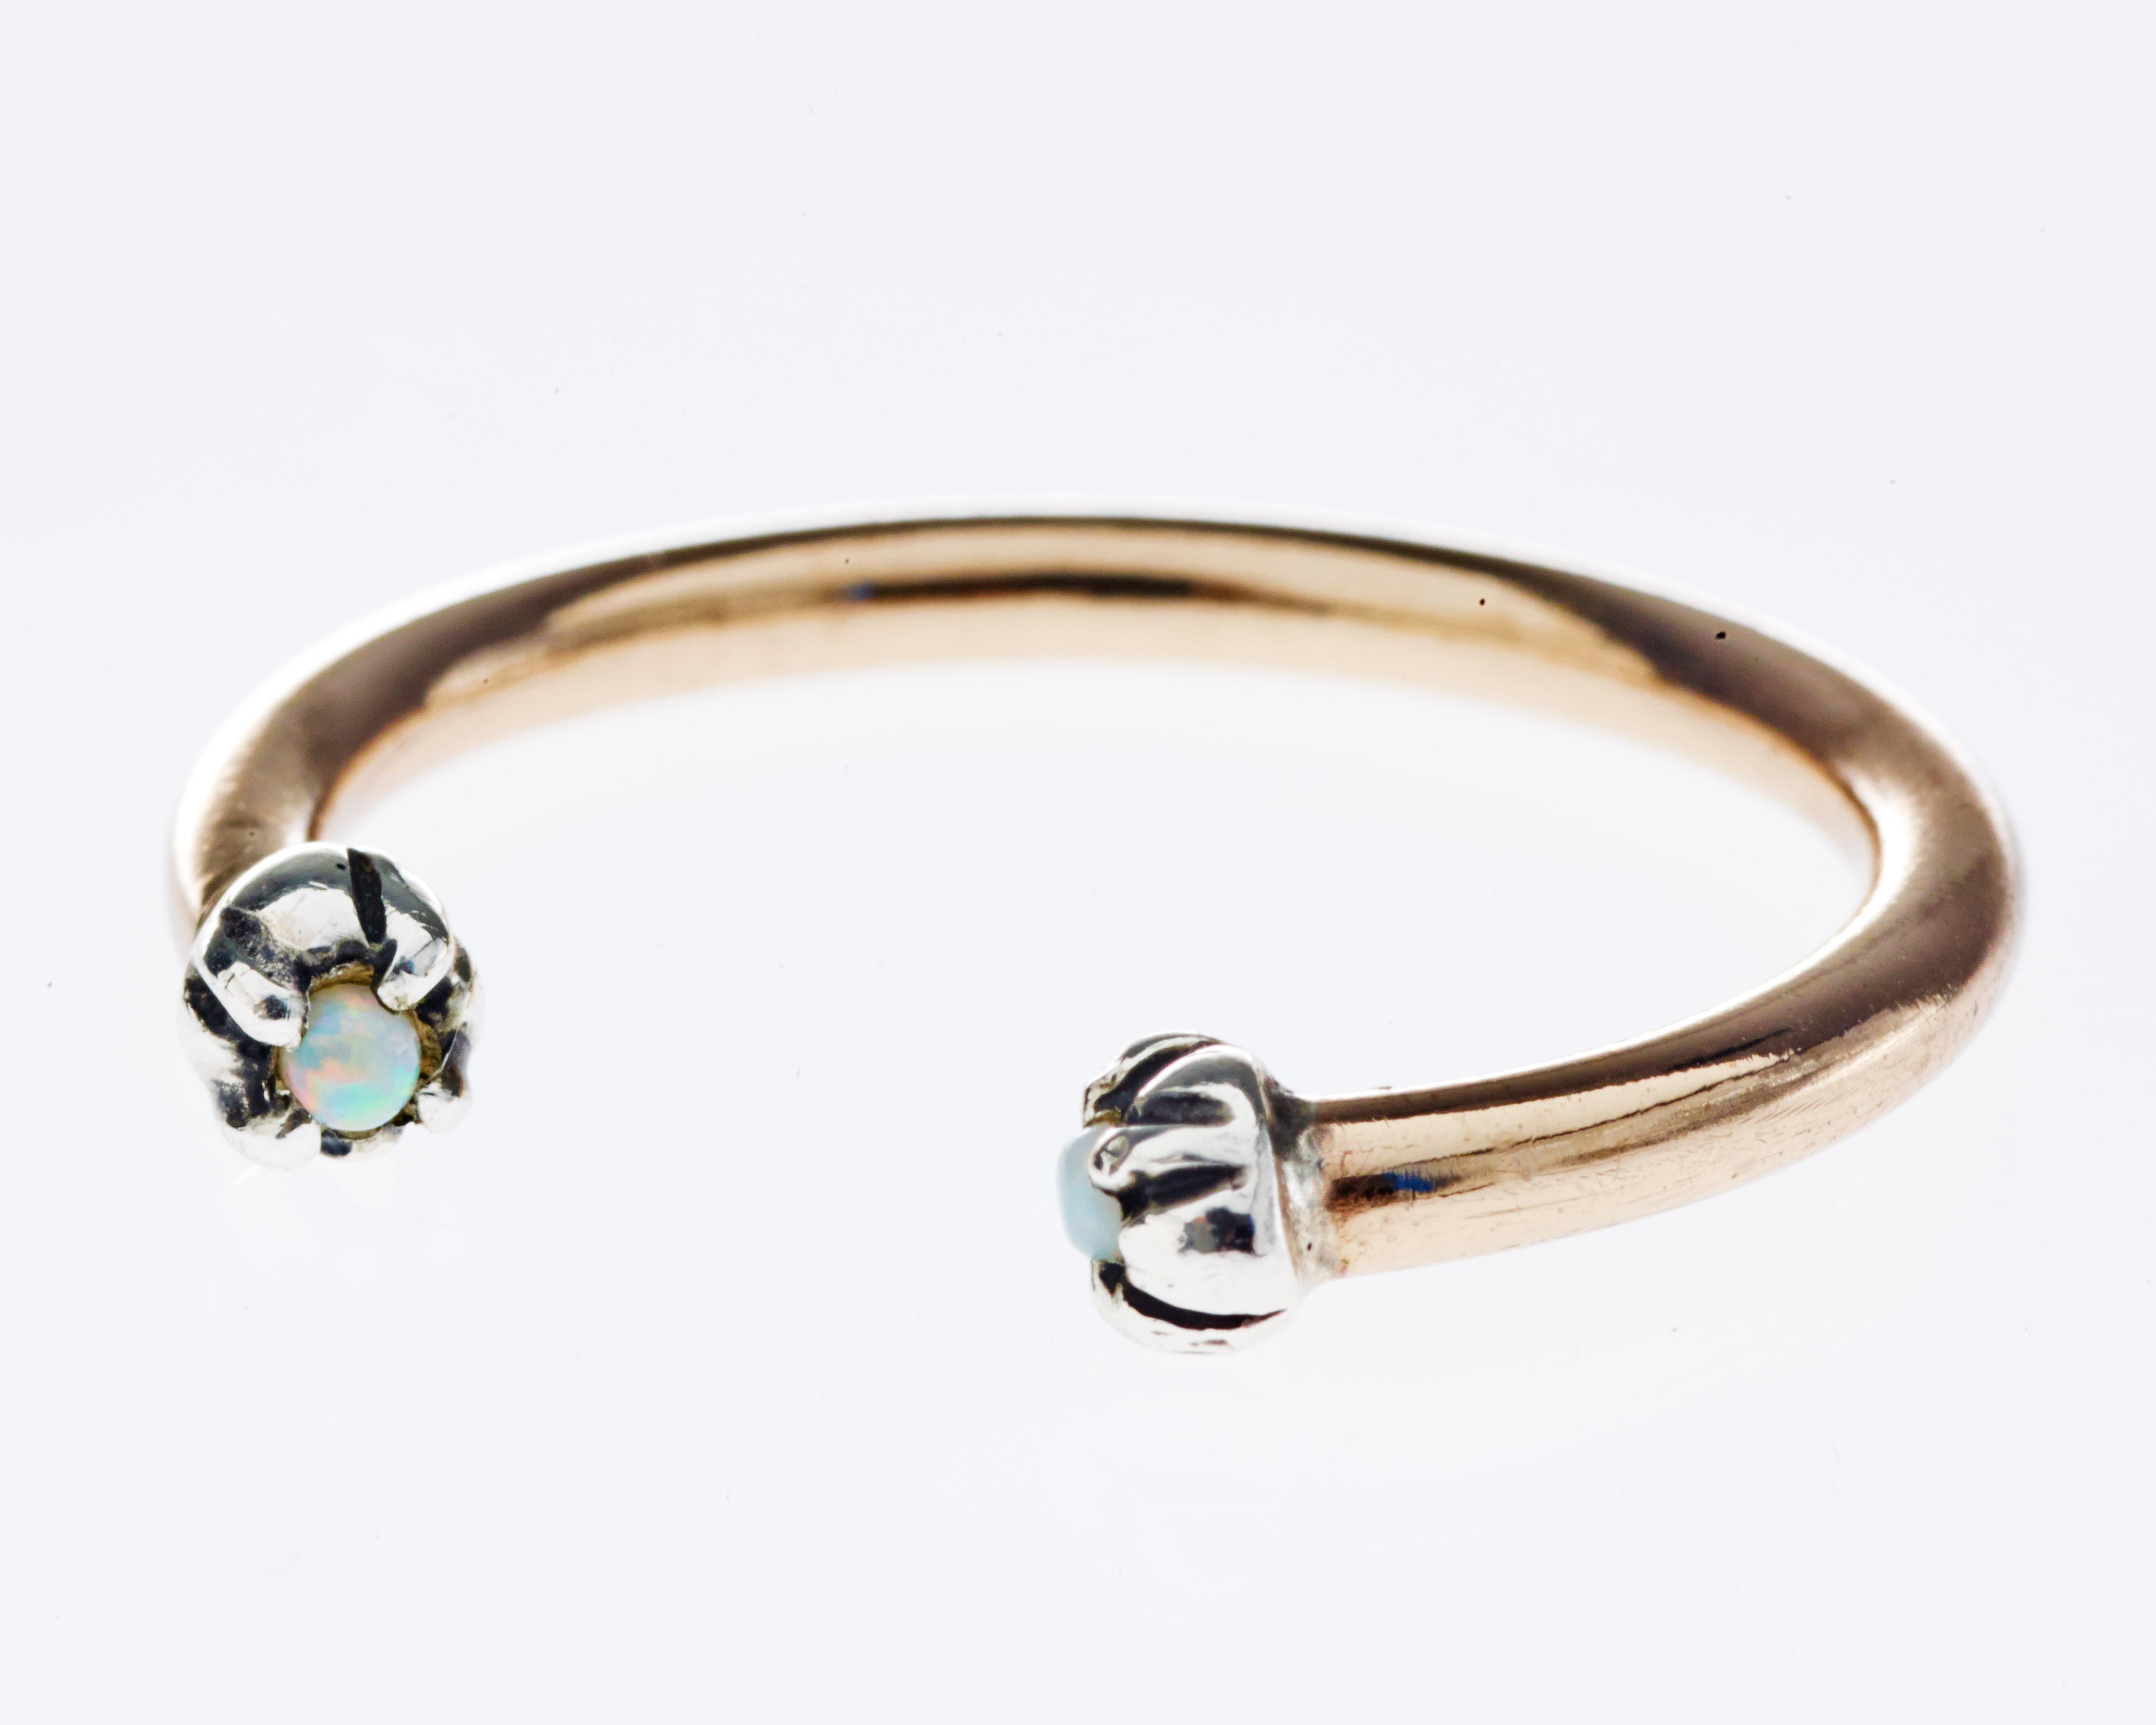 Verstellbarer stapelbarer J Dauphin Stapelbarer Goldring Opal Ring Goldband Ring Opal

J DAUPHIN 